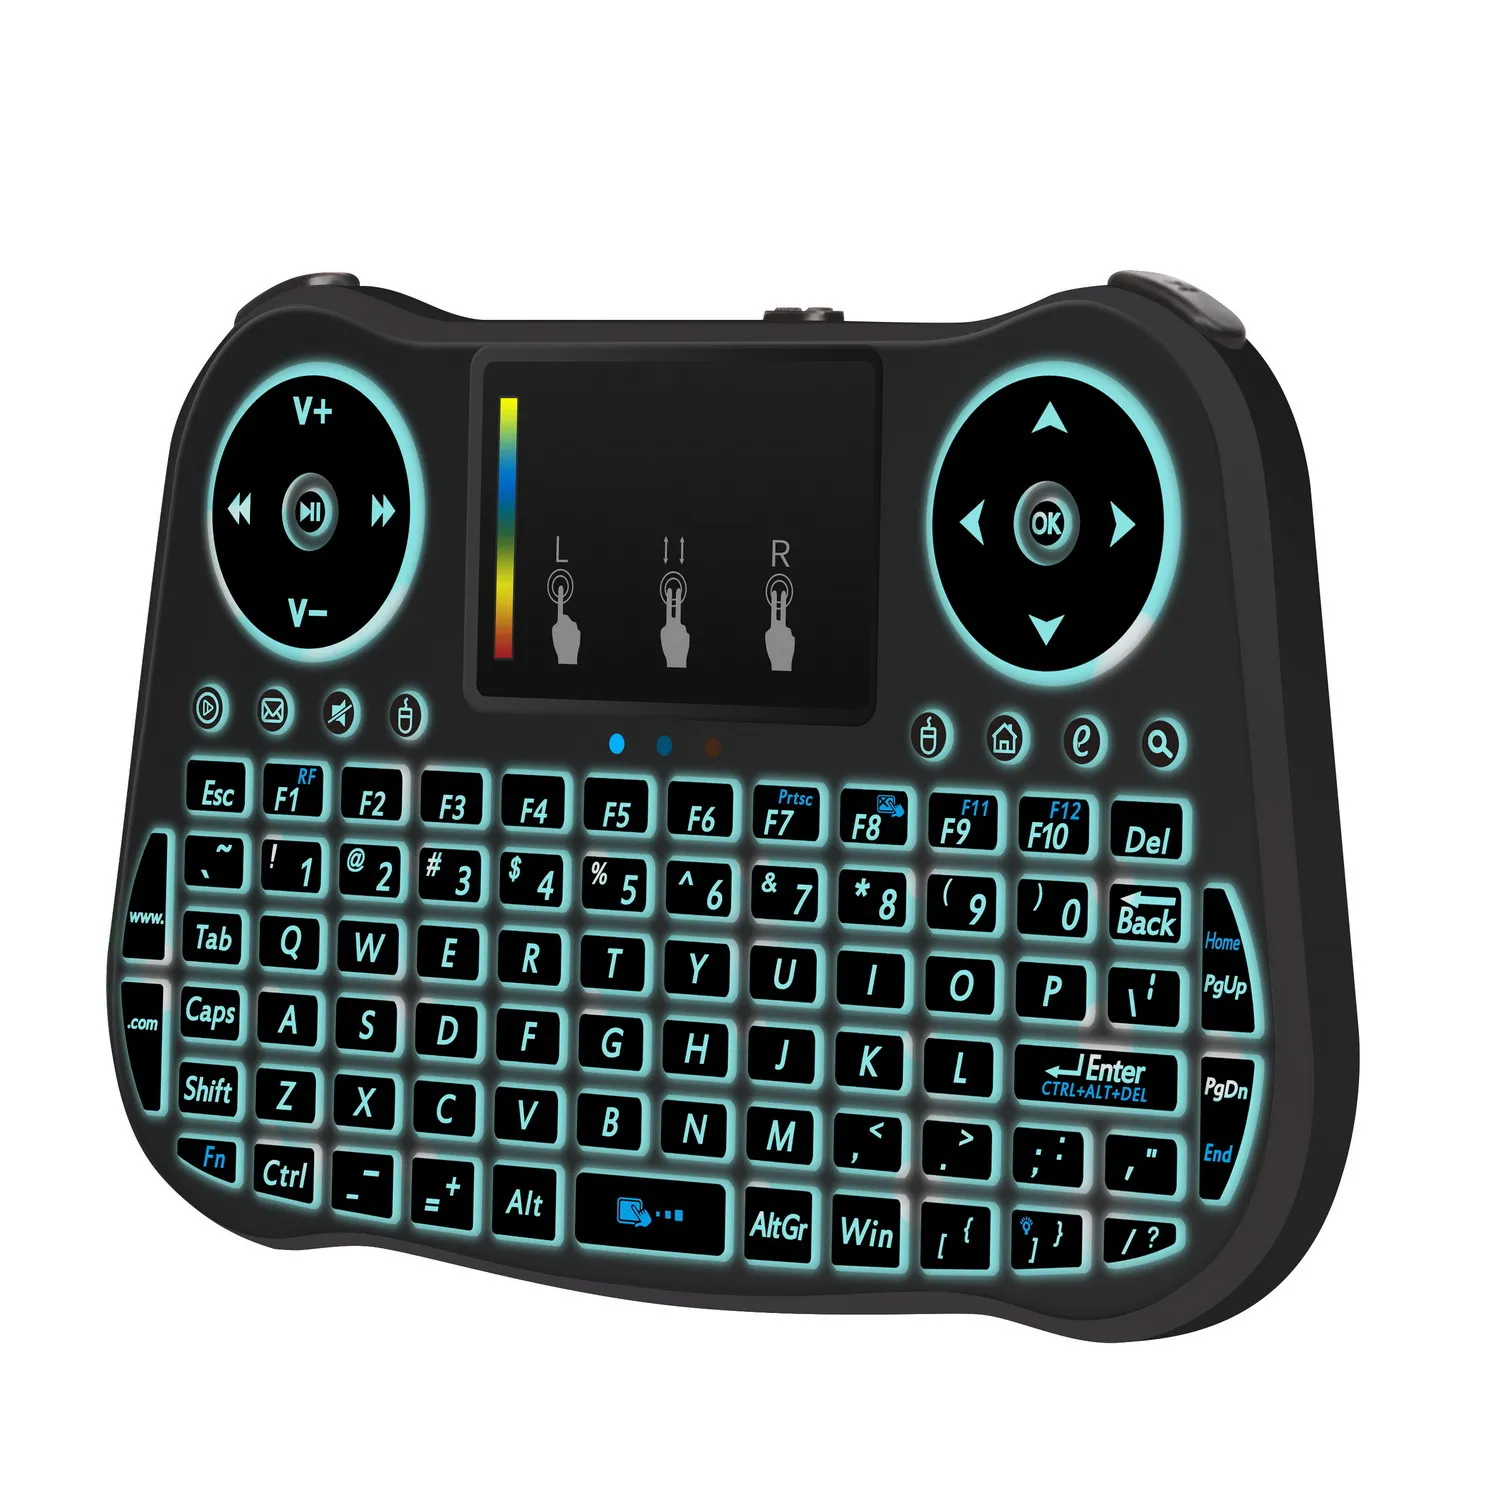 20 pièces MINI MT08 2.4 GHz clavier sans fil 7 couleurs rétro-éclairé anglais télécommande pavé tactile pour Android TV Box tablette PC Smart TV PK i8